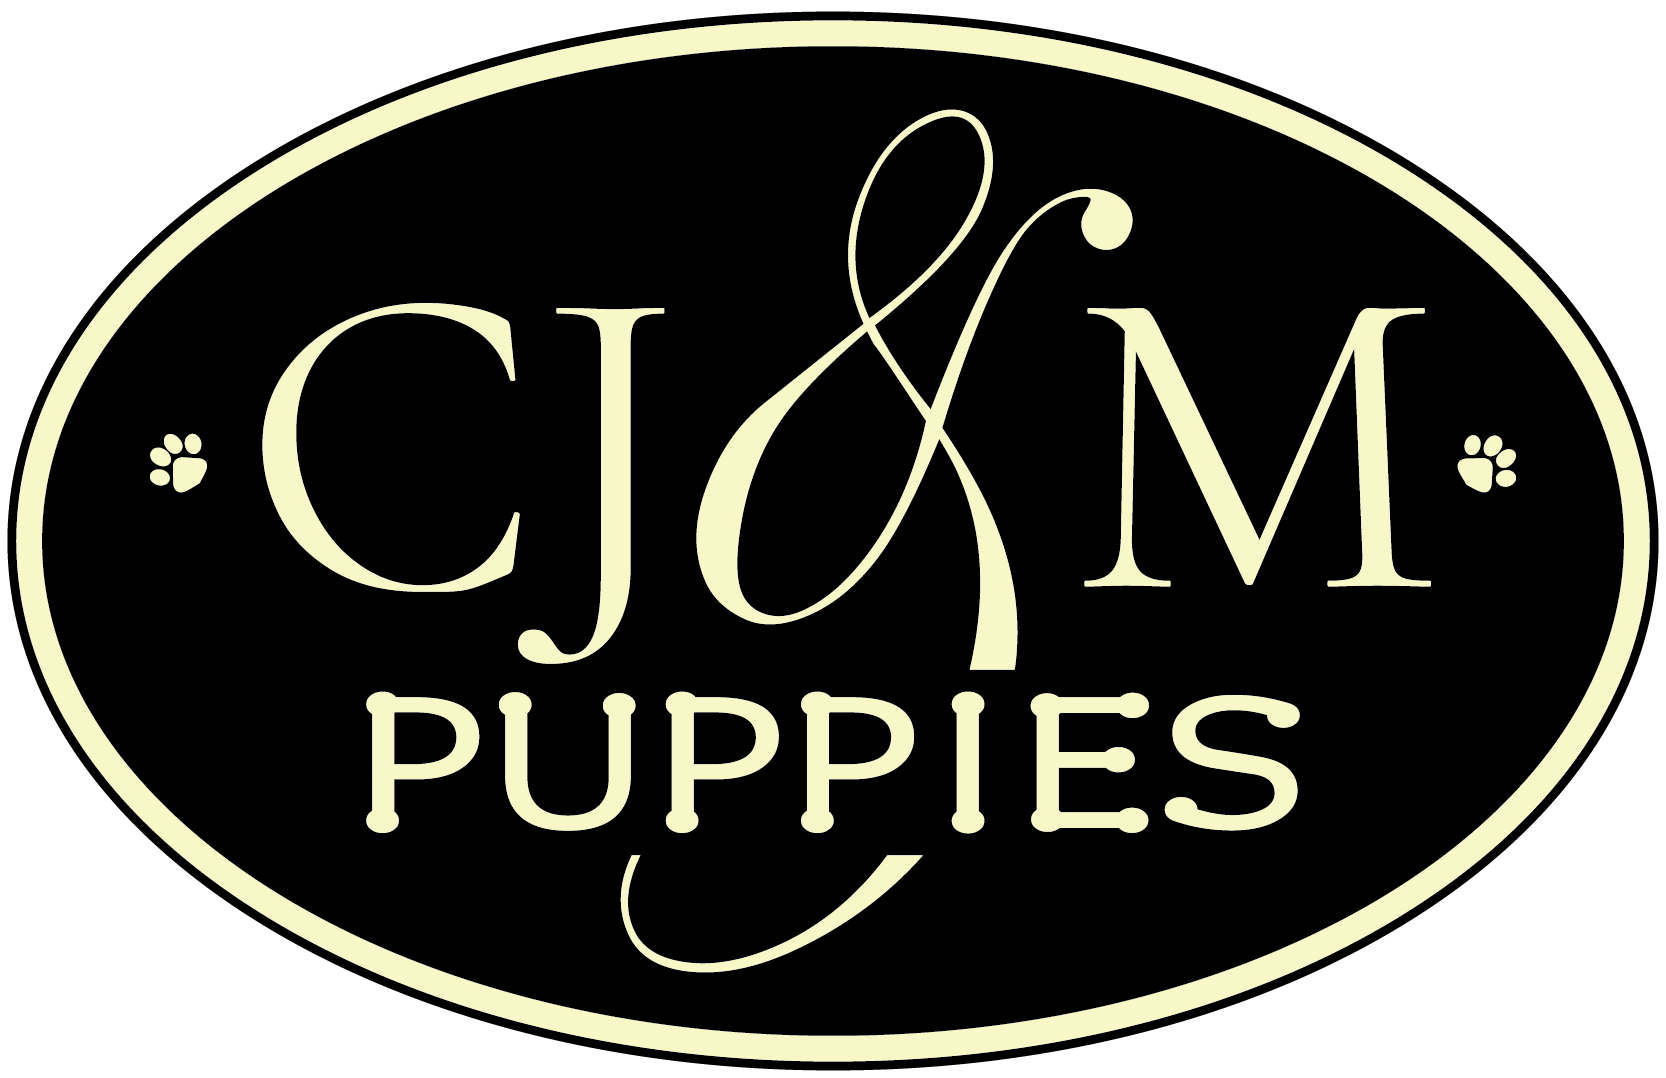 CJM Puppies Logp